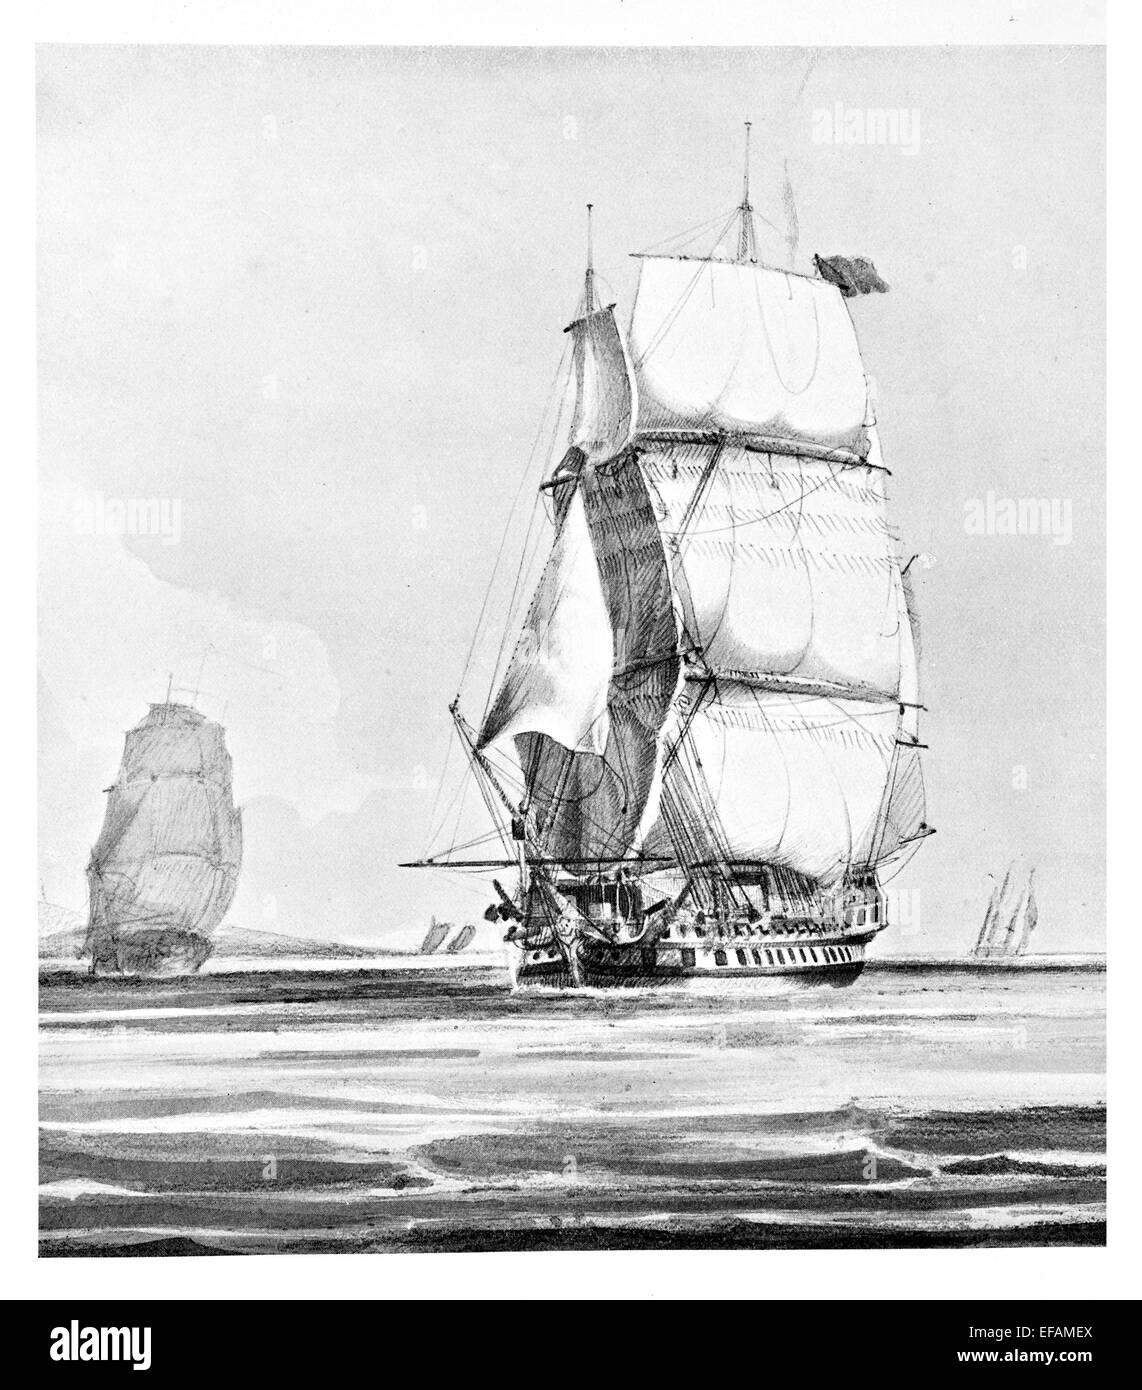 Le H.M.S. Aboukir 1807 expédition de Walcheren 1809 Mer Baltique 1812 phare de Sir T Byam Martin. Vendu 1838 Banque D'Images